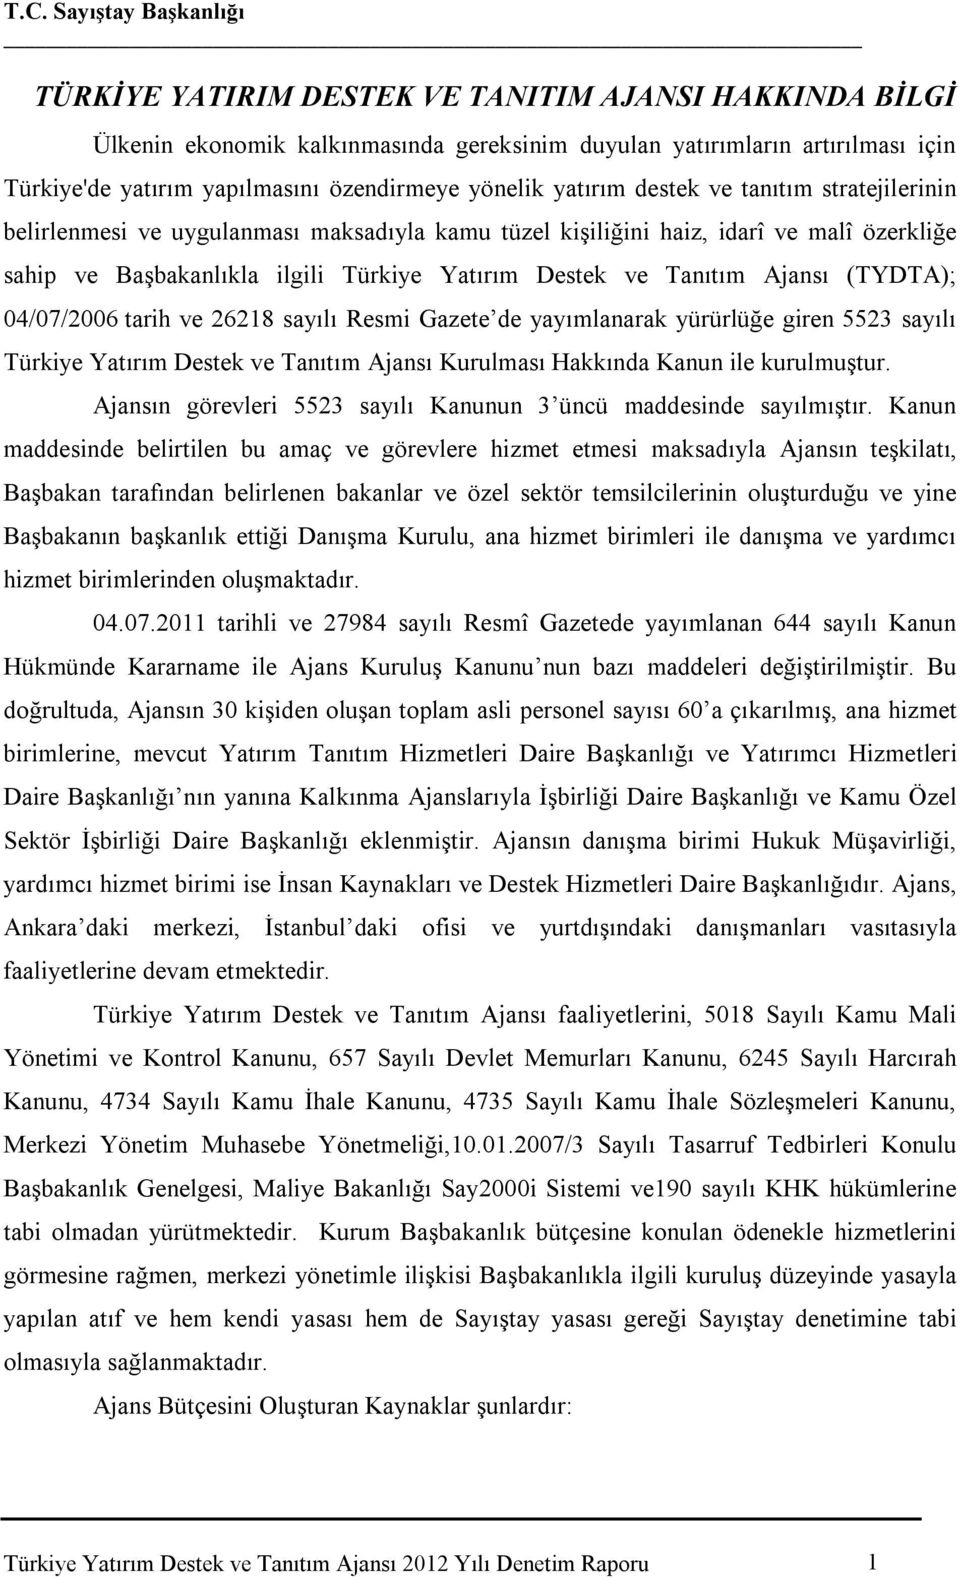 Destek ve Tanıtım Ajansı (TYDTA); 04/07/2006 tarih ve 26218 sayılı Resmi Gazete de yayımlanarak yürürlüğe giren 5523 sayılı Türkiye Yatırım Destek ve Tanıtım Ajansı Kurulması Hakkında Kanun ile